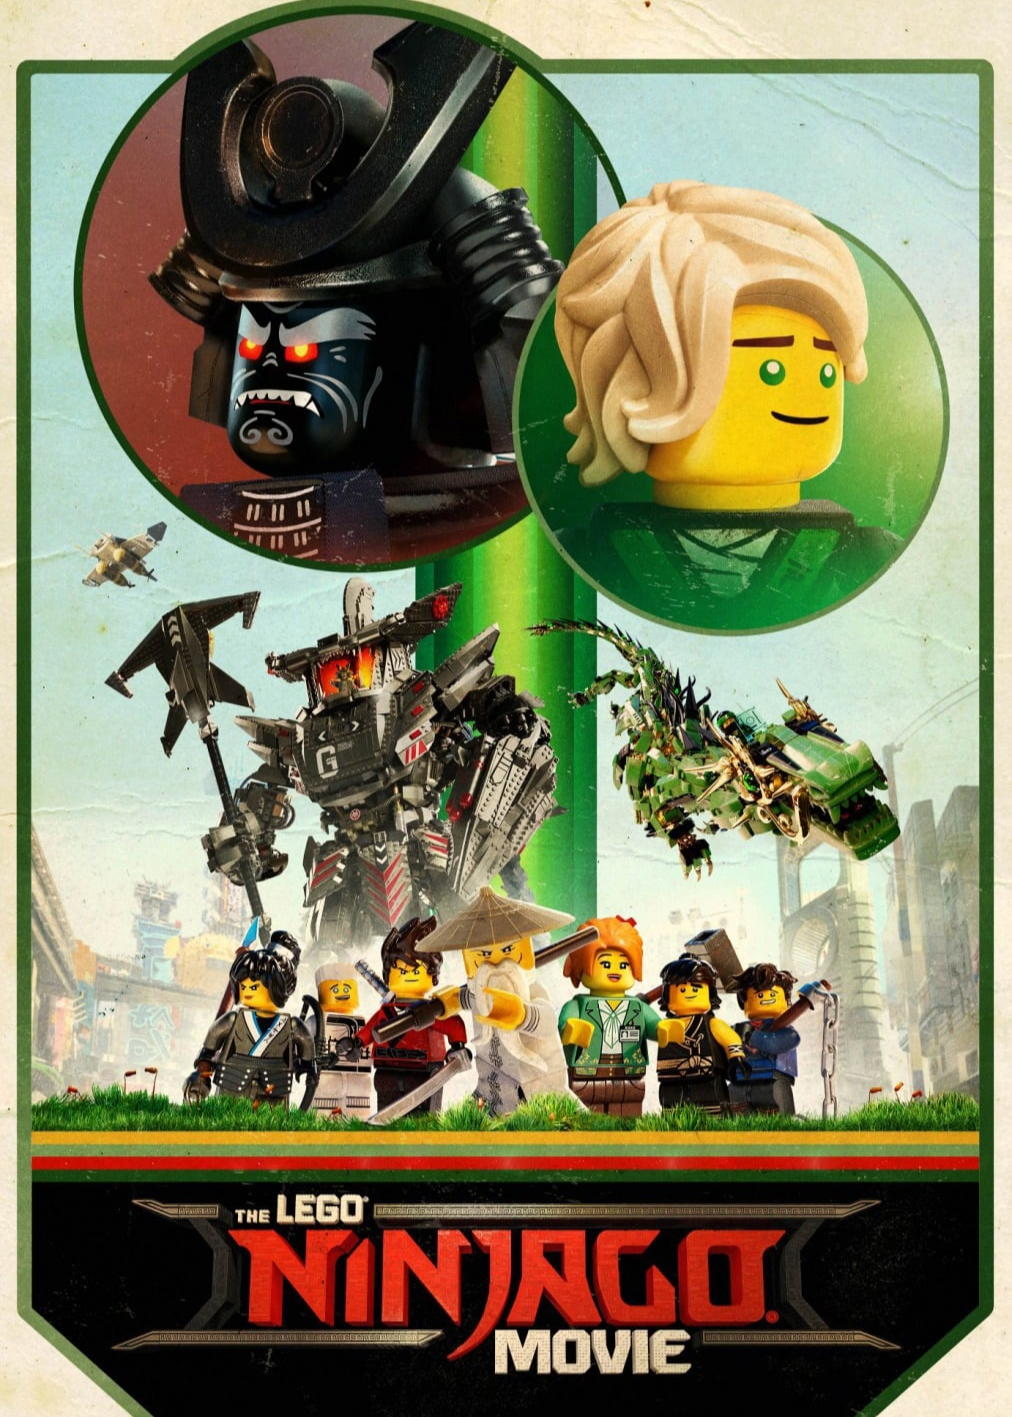 Xem Phim Phim LEGO Ninjago (The Lego Ninjago Movie)